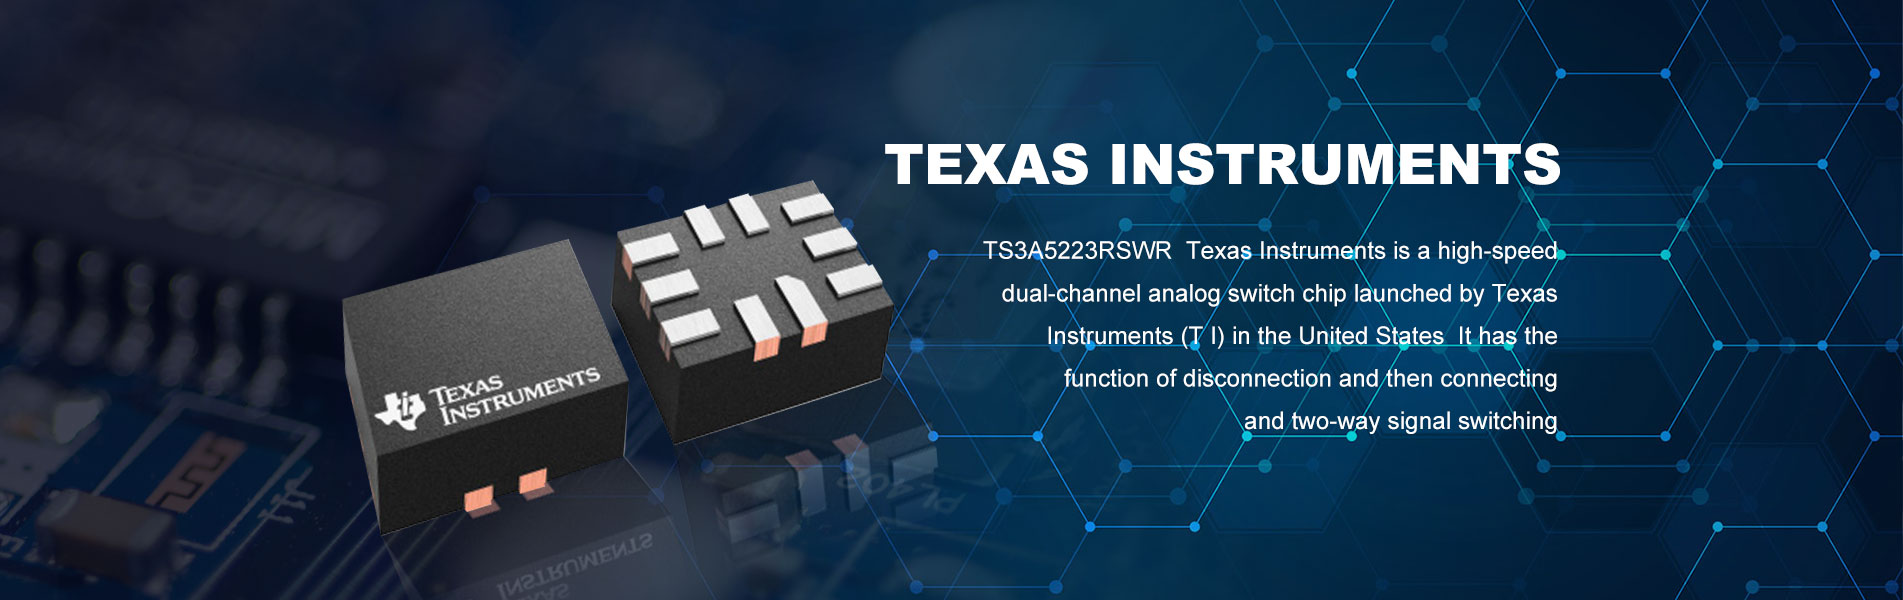 Furnizori Texas Instruments